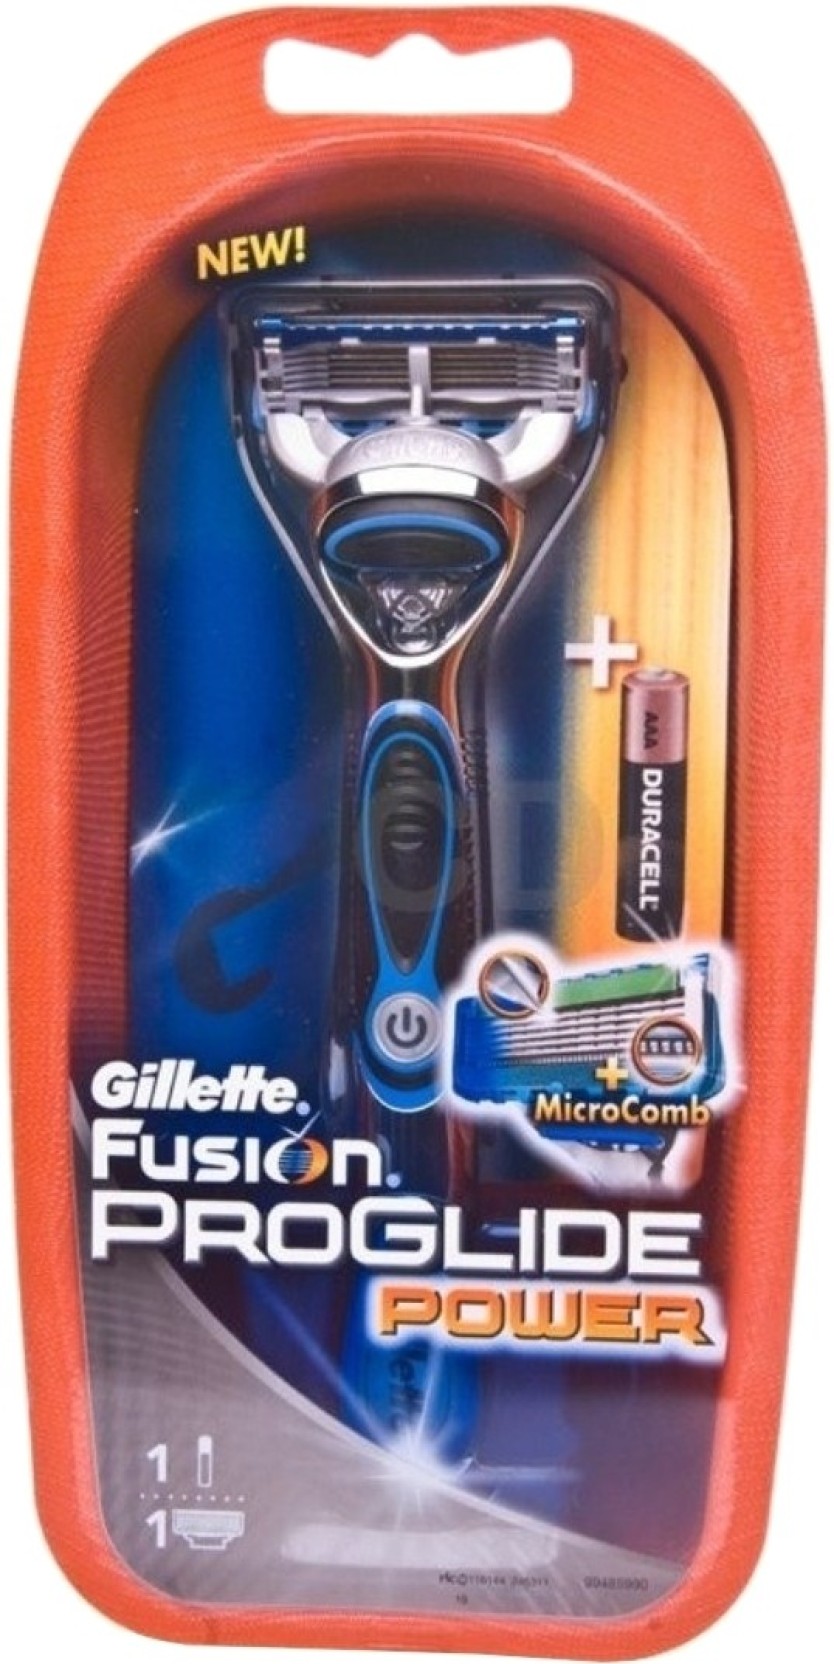 gillette-fusion-proglide-power-shaving-razor-price-in-india-buy